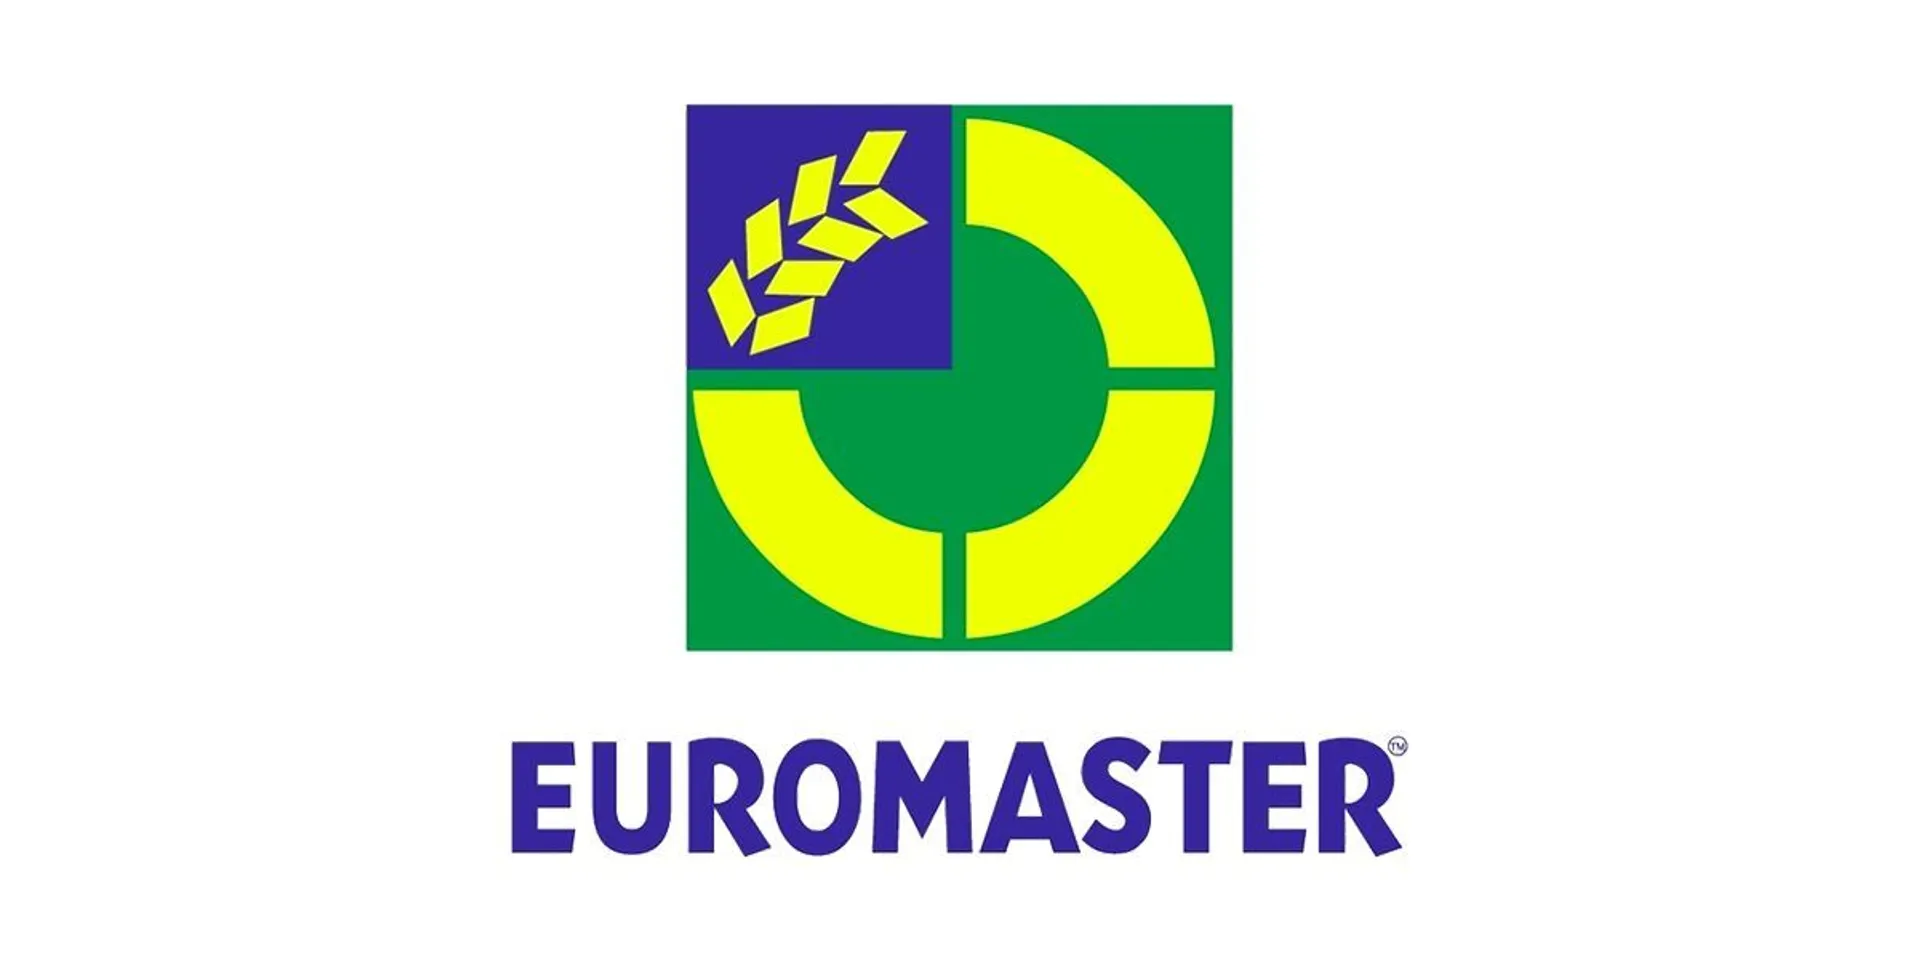 EUROMASTER logo